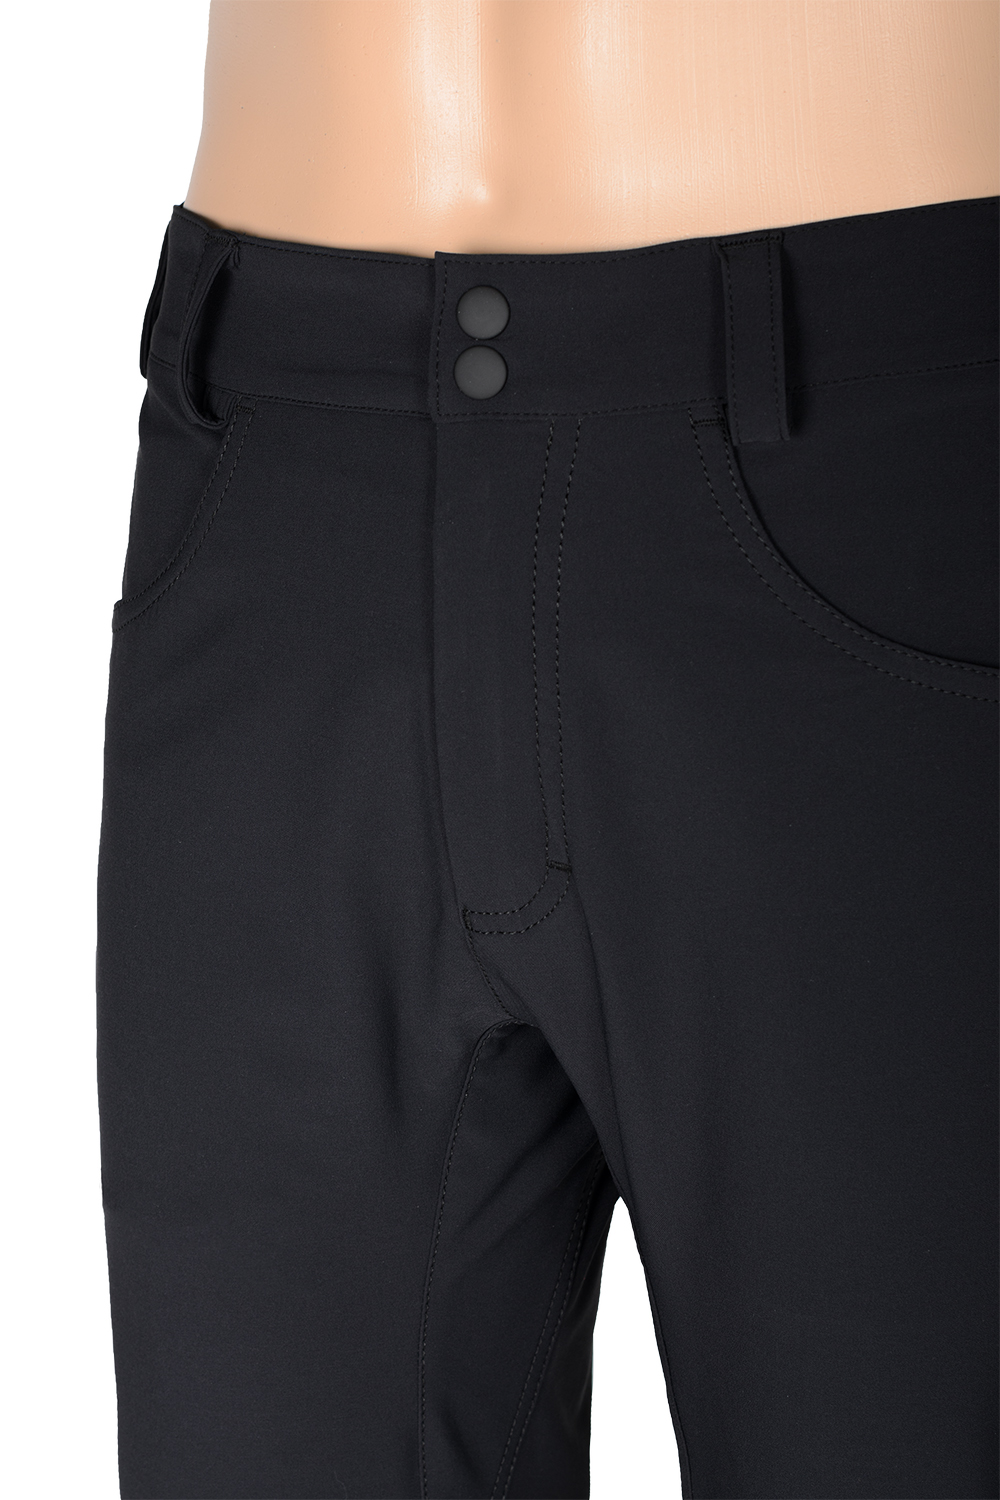 Мужские брюки Nick для треккинга купитьв магазине летних спортивных брюк O3 Ozone